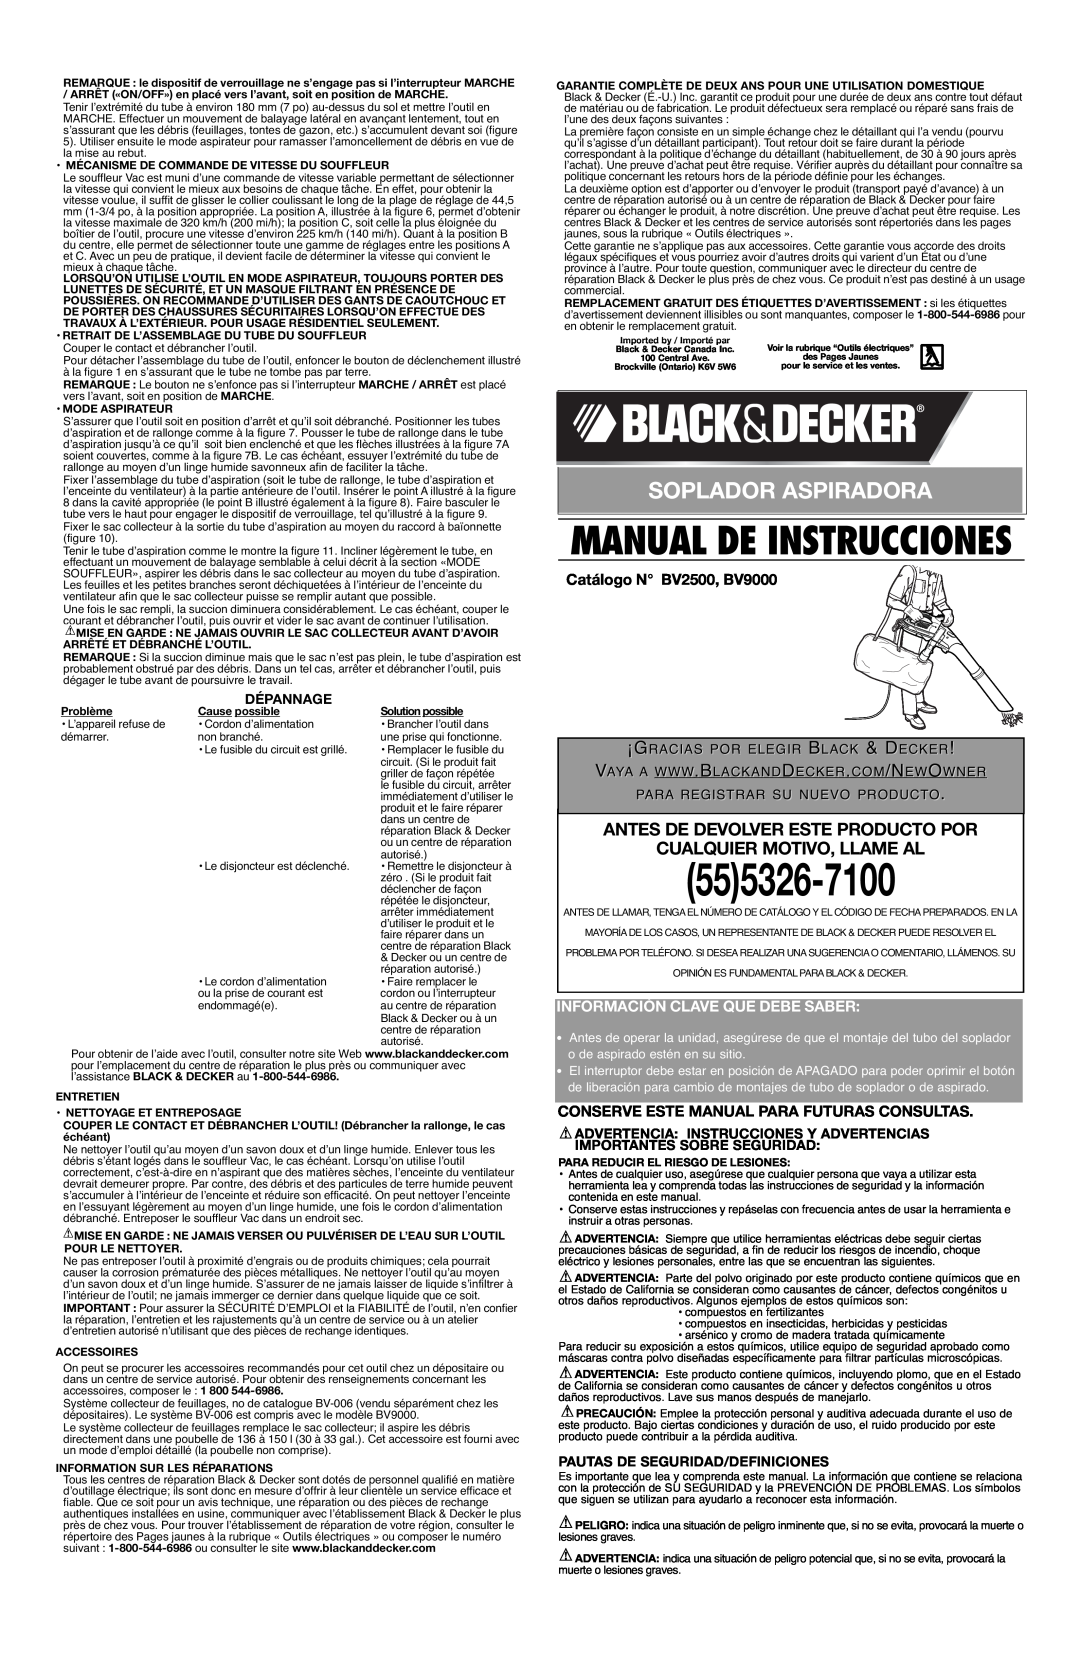 Black & Decker 625233-01 Soplador Aspiradora, Antes De Devolver Este Producto Por Cualquier Motivo, Llame Al, Dépannage 